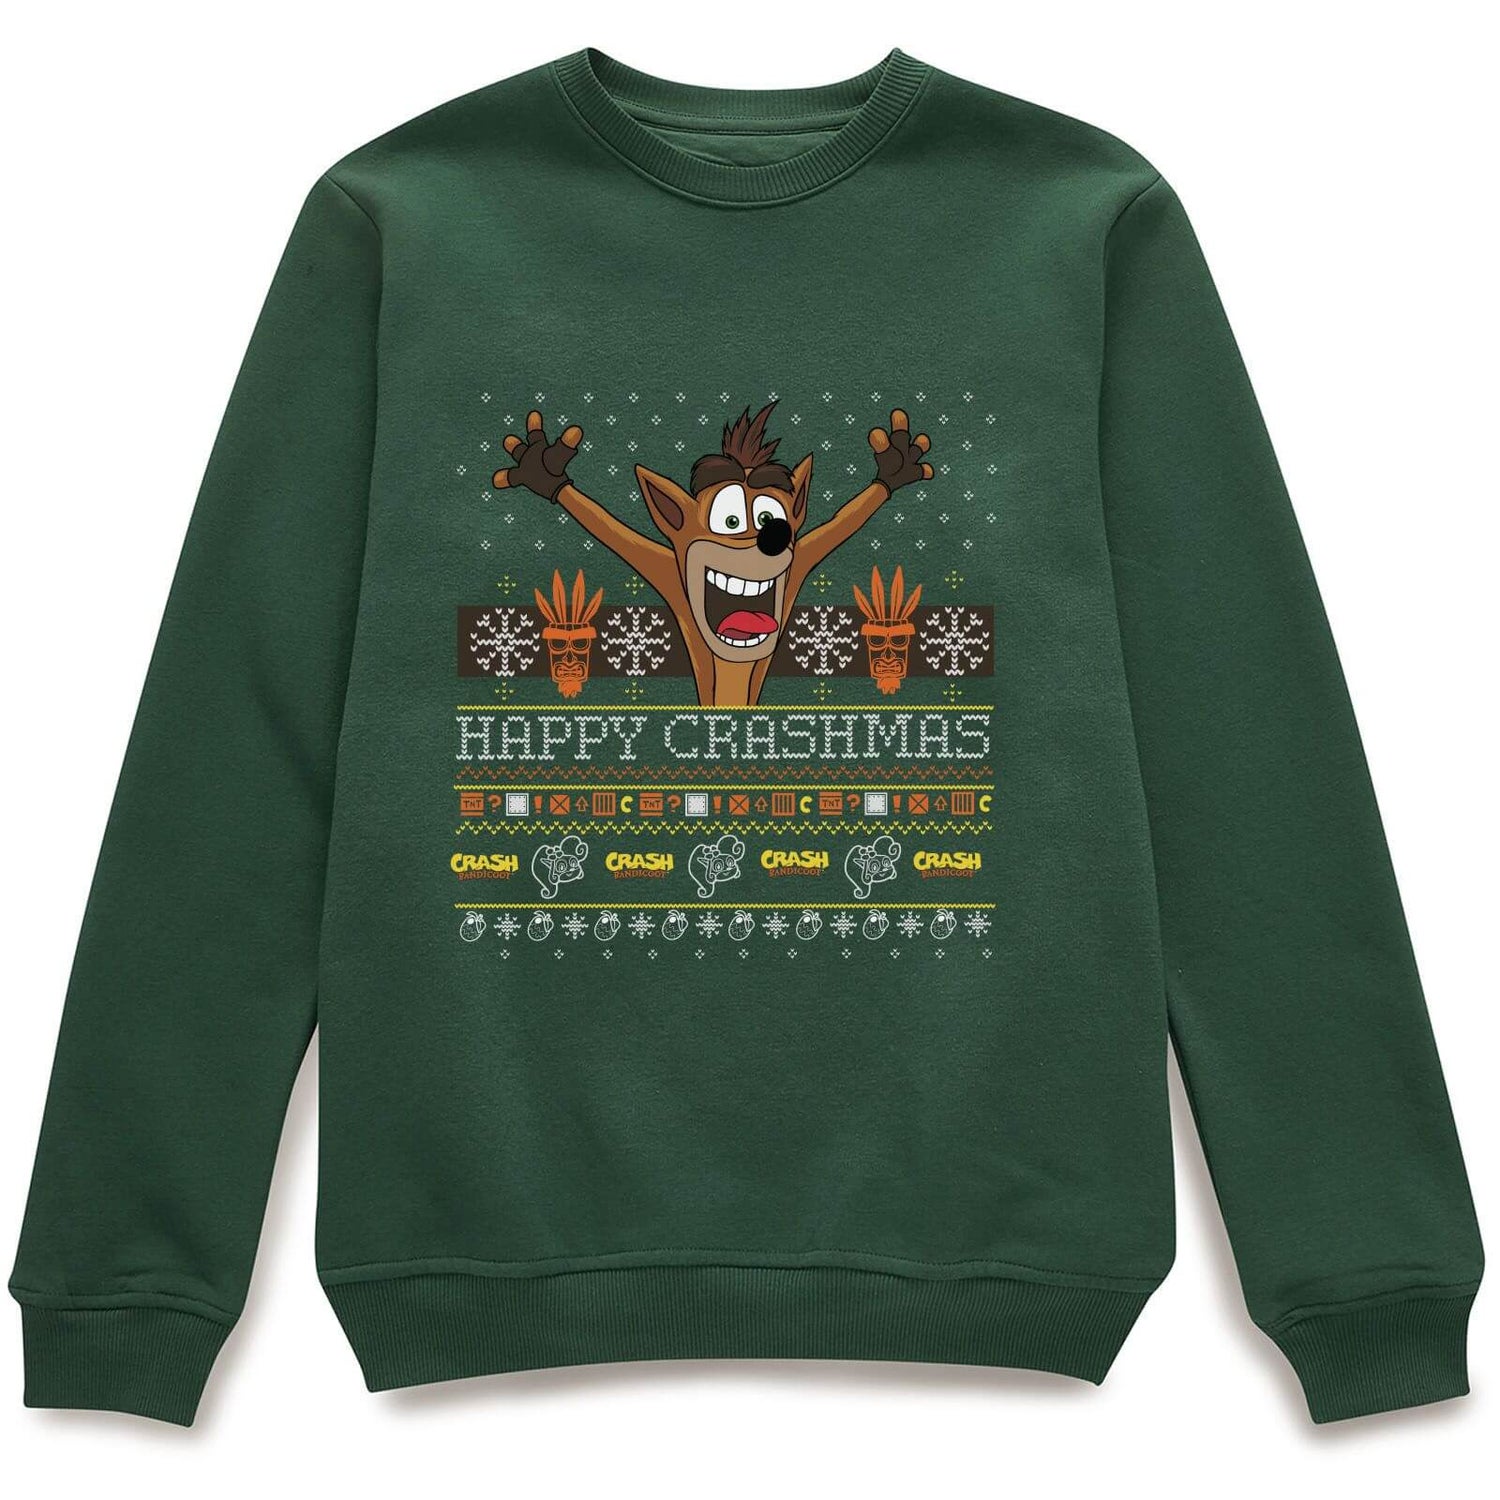 Crash Bandicoot Happy Crashmas Christmas Jumper - Green